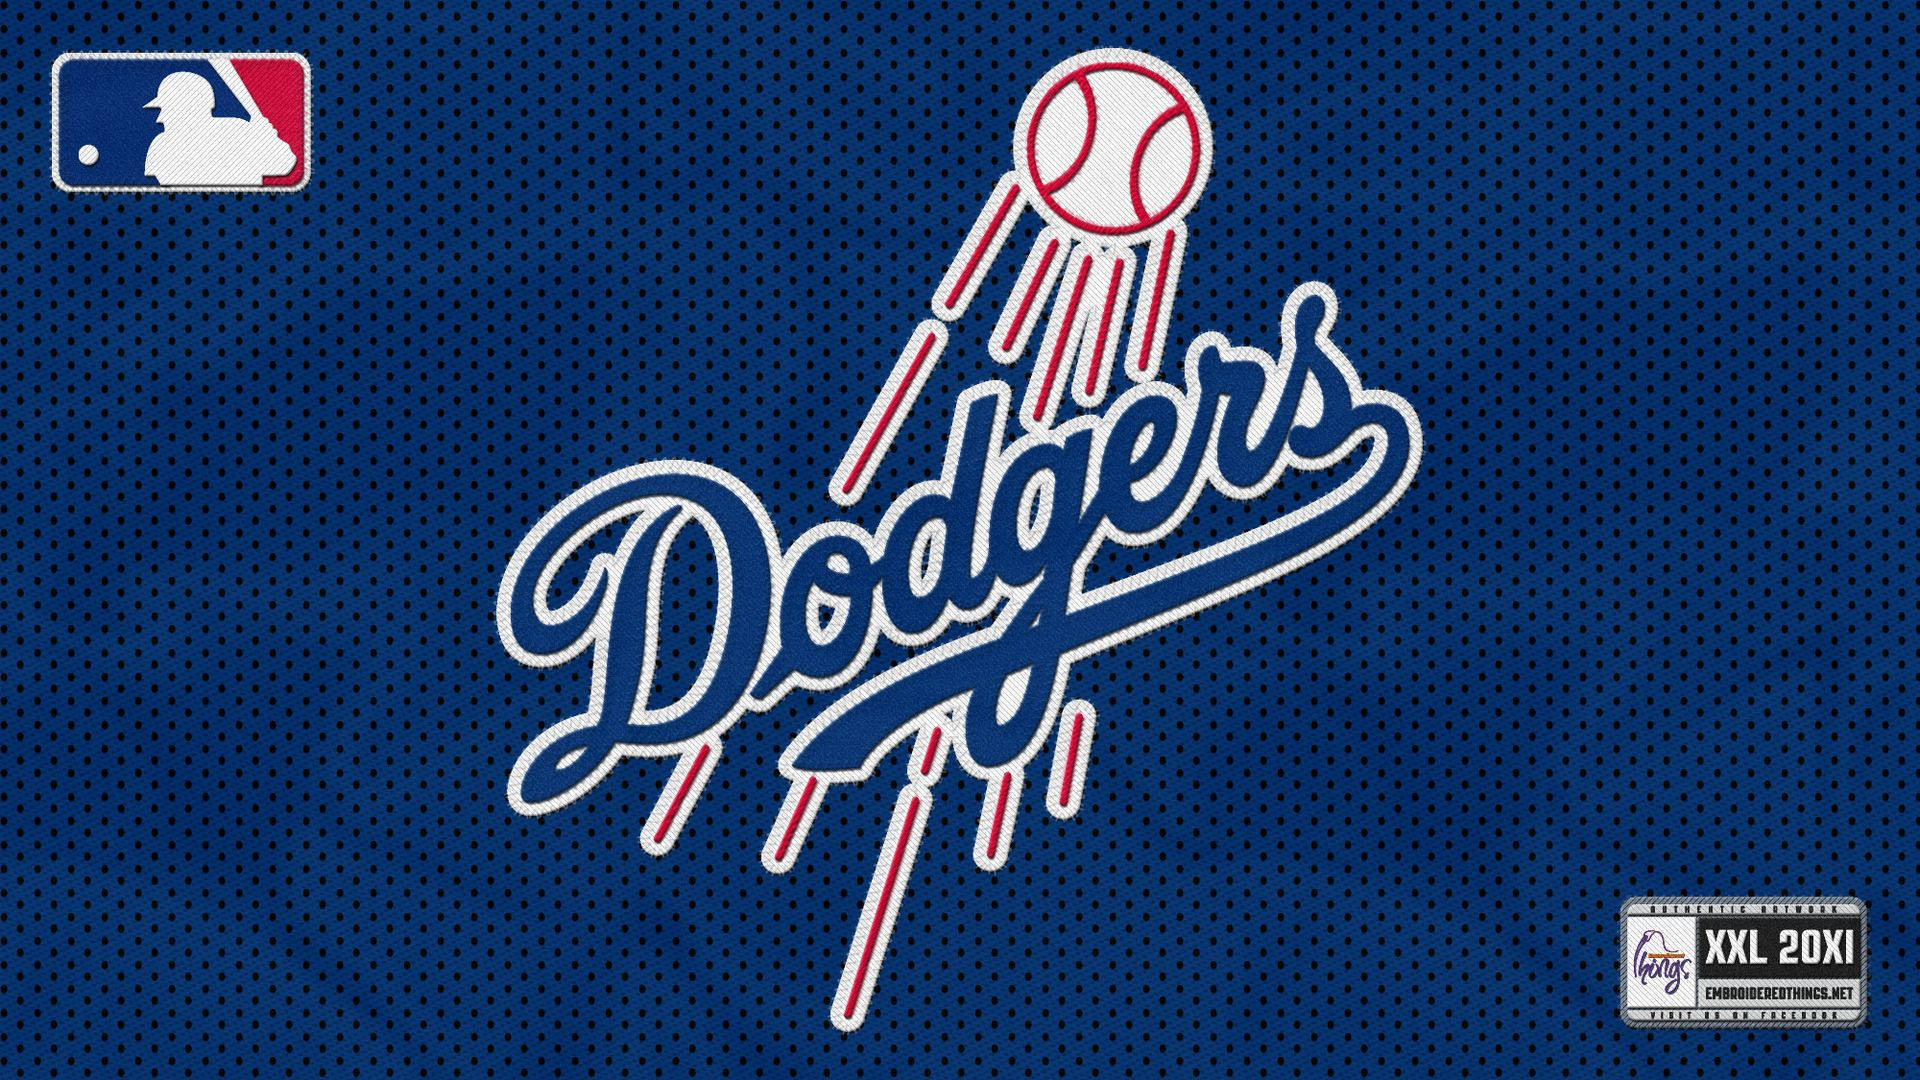 Dodgers-logoet 1920 X 1080 Wallpaper